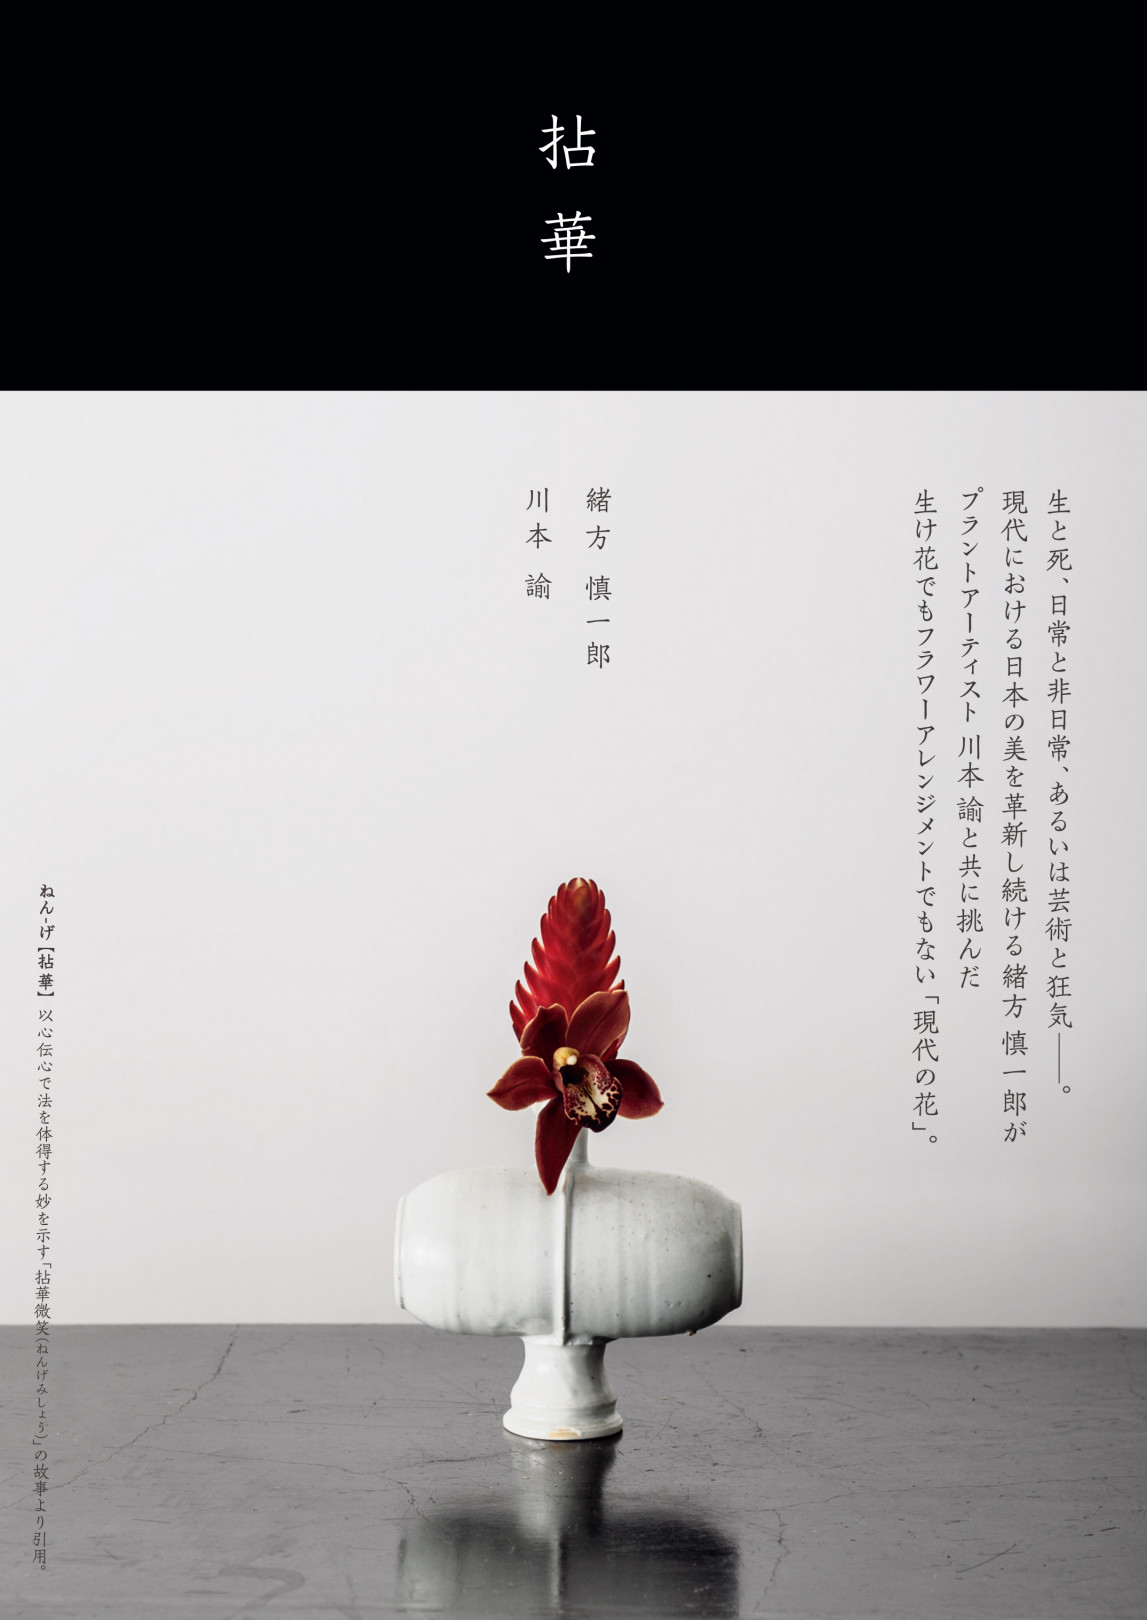 SIMPLICITY代表の緒方慎一郎とプラントアーティスト川本諭による共著『拈華（ねんげ）』